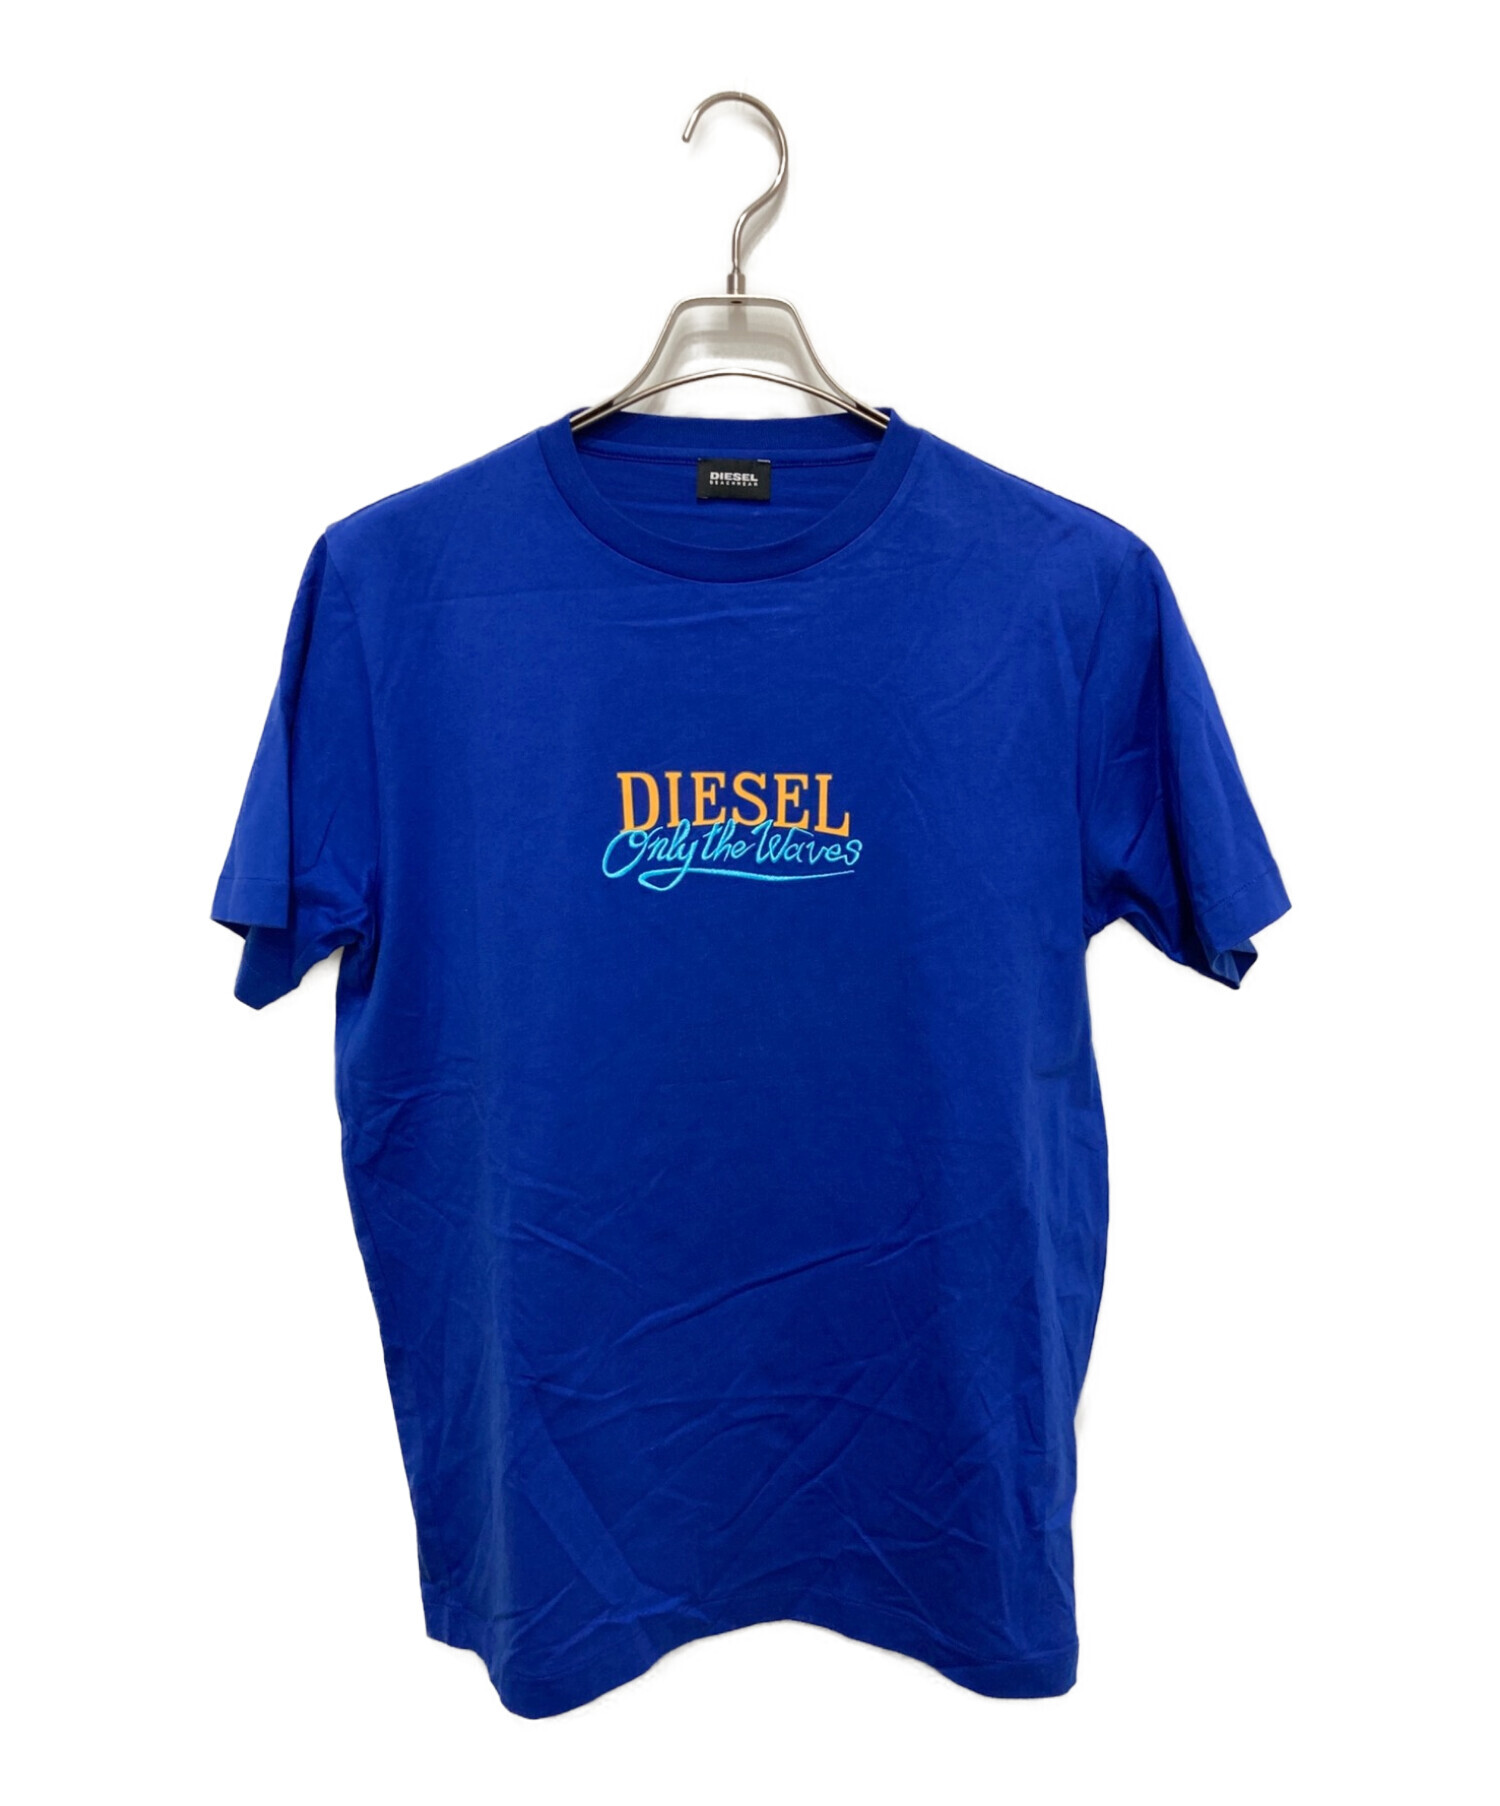 SサイズDIESEL (ディーゼル) プリントTシャツ ブルー サイズ:S